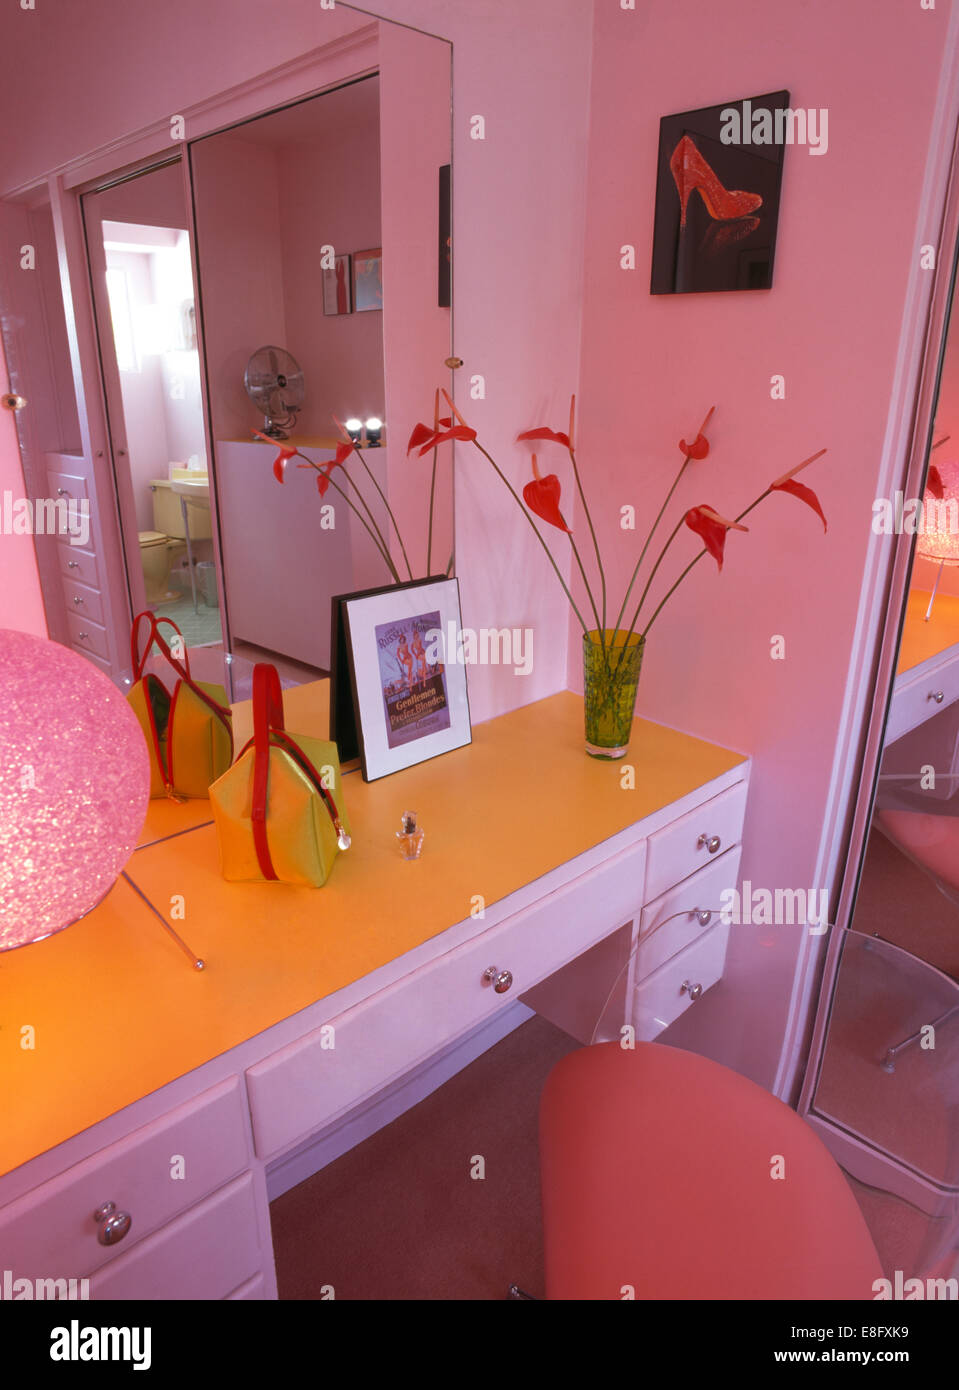 Spiegel oben montiert Schminktisch rosa 50er Jahre Stil Schlafzimmer  Stockfotografie - Alamy